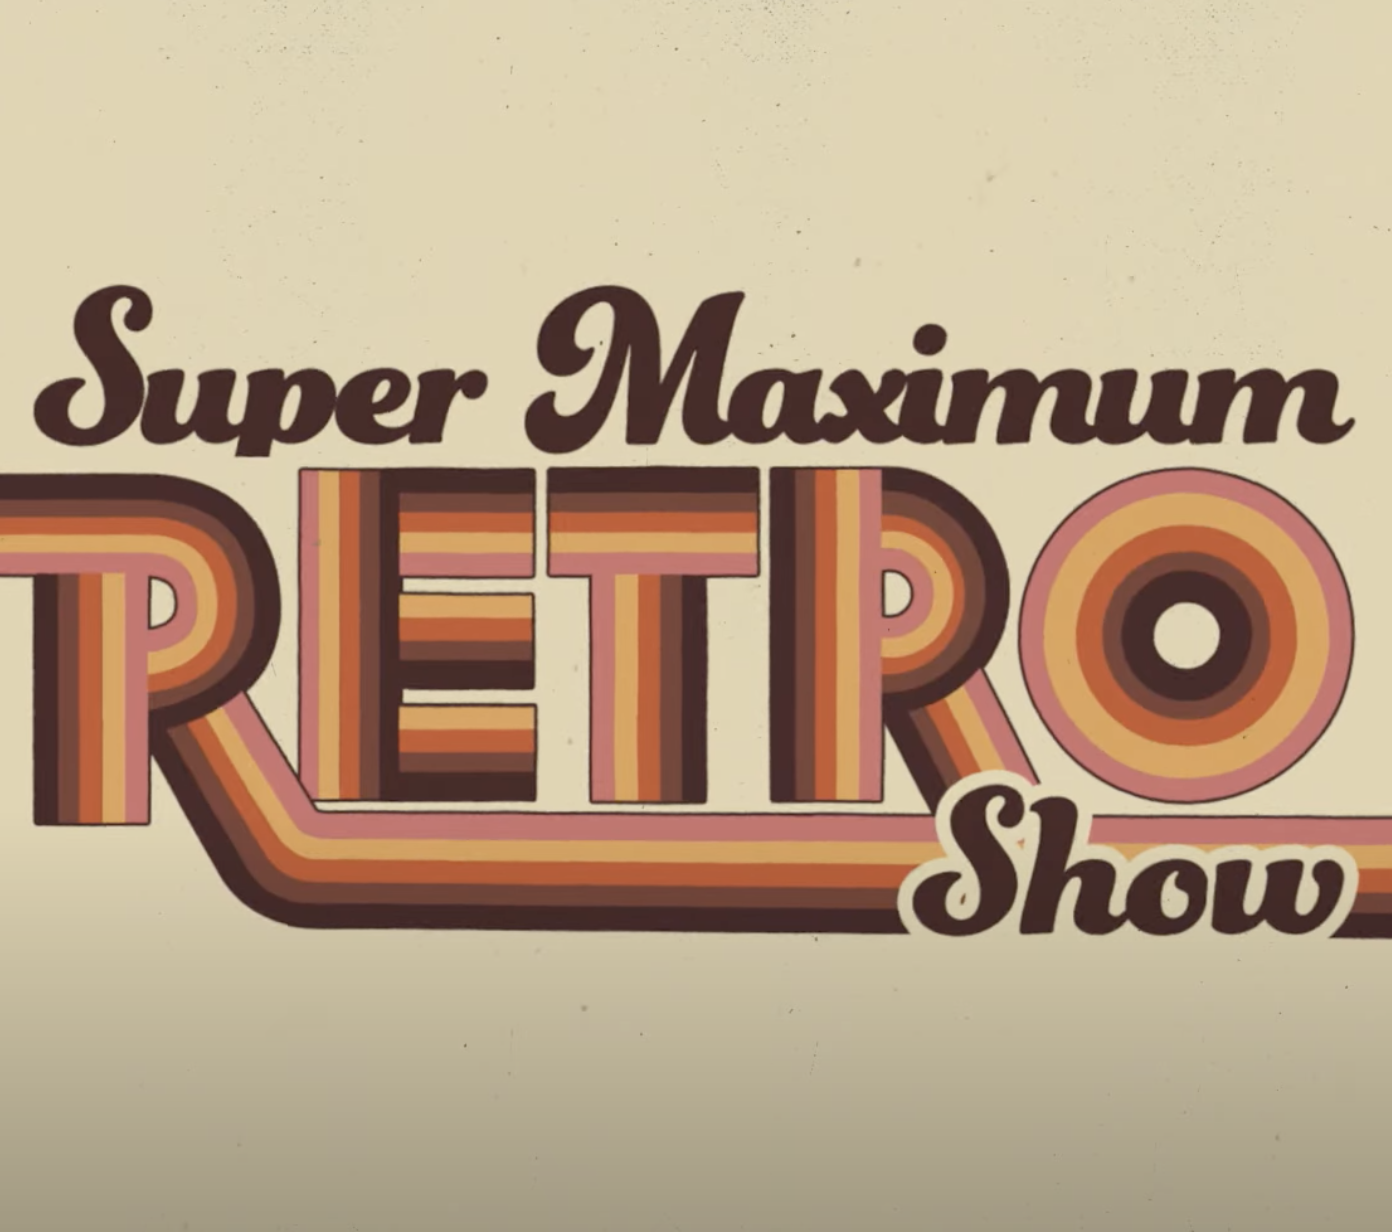 Super Maximum Retro Show